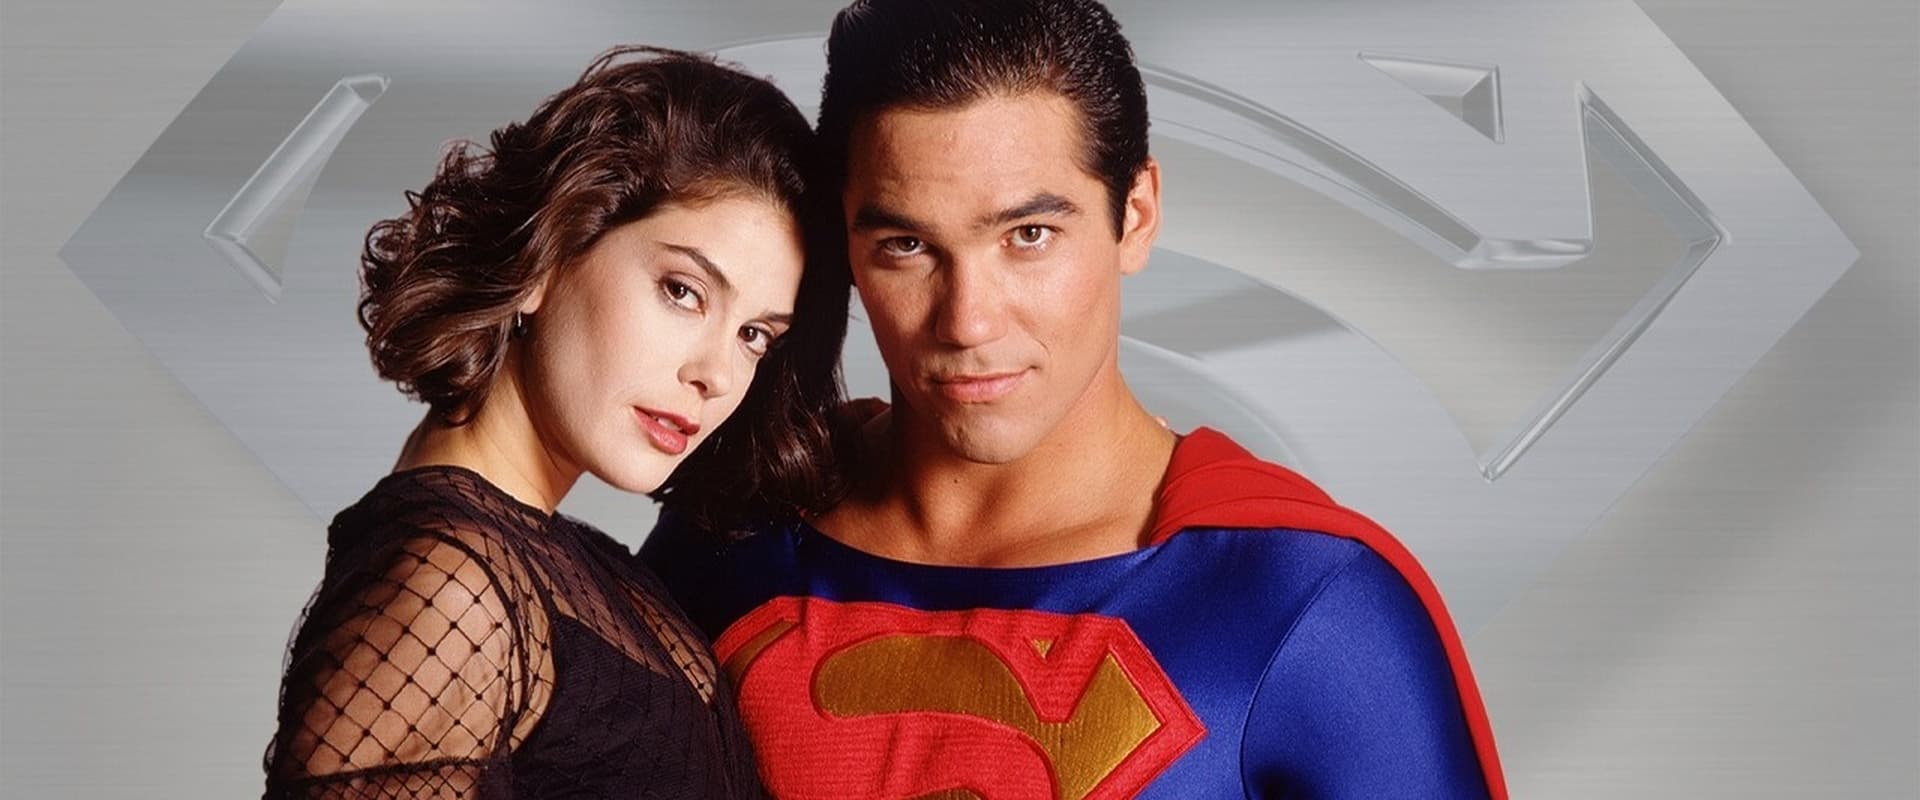 Loïs et Clark : les Nouvelles Aventures de Superman